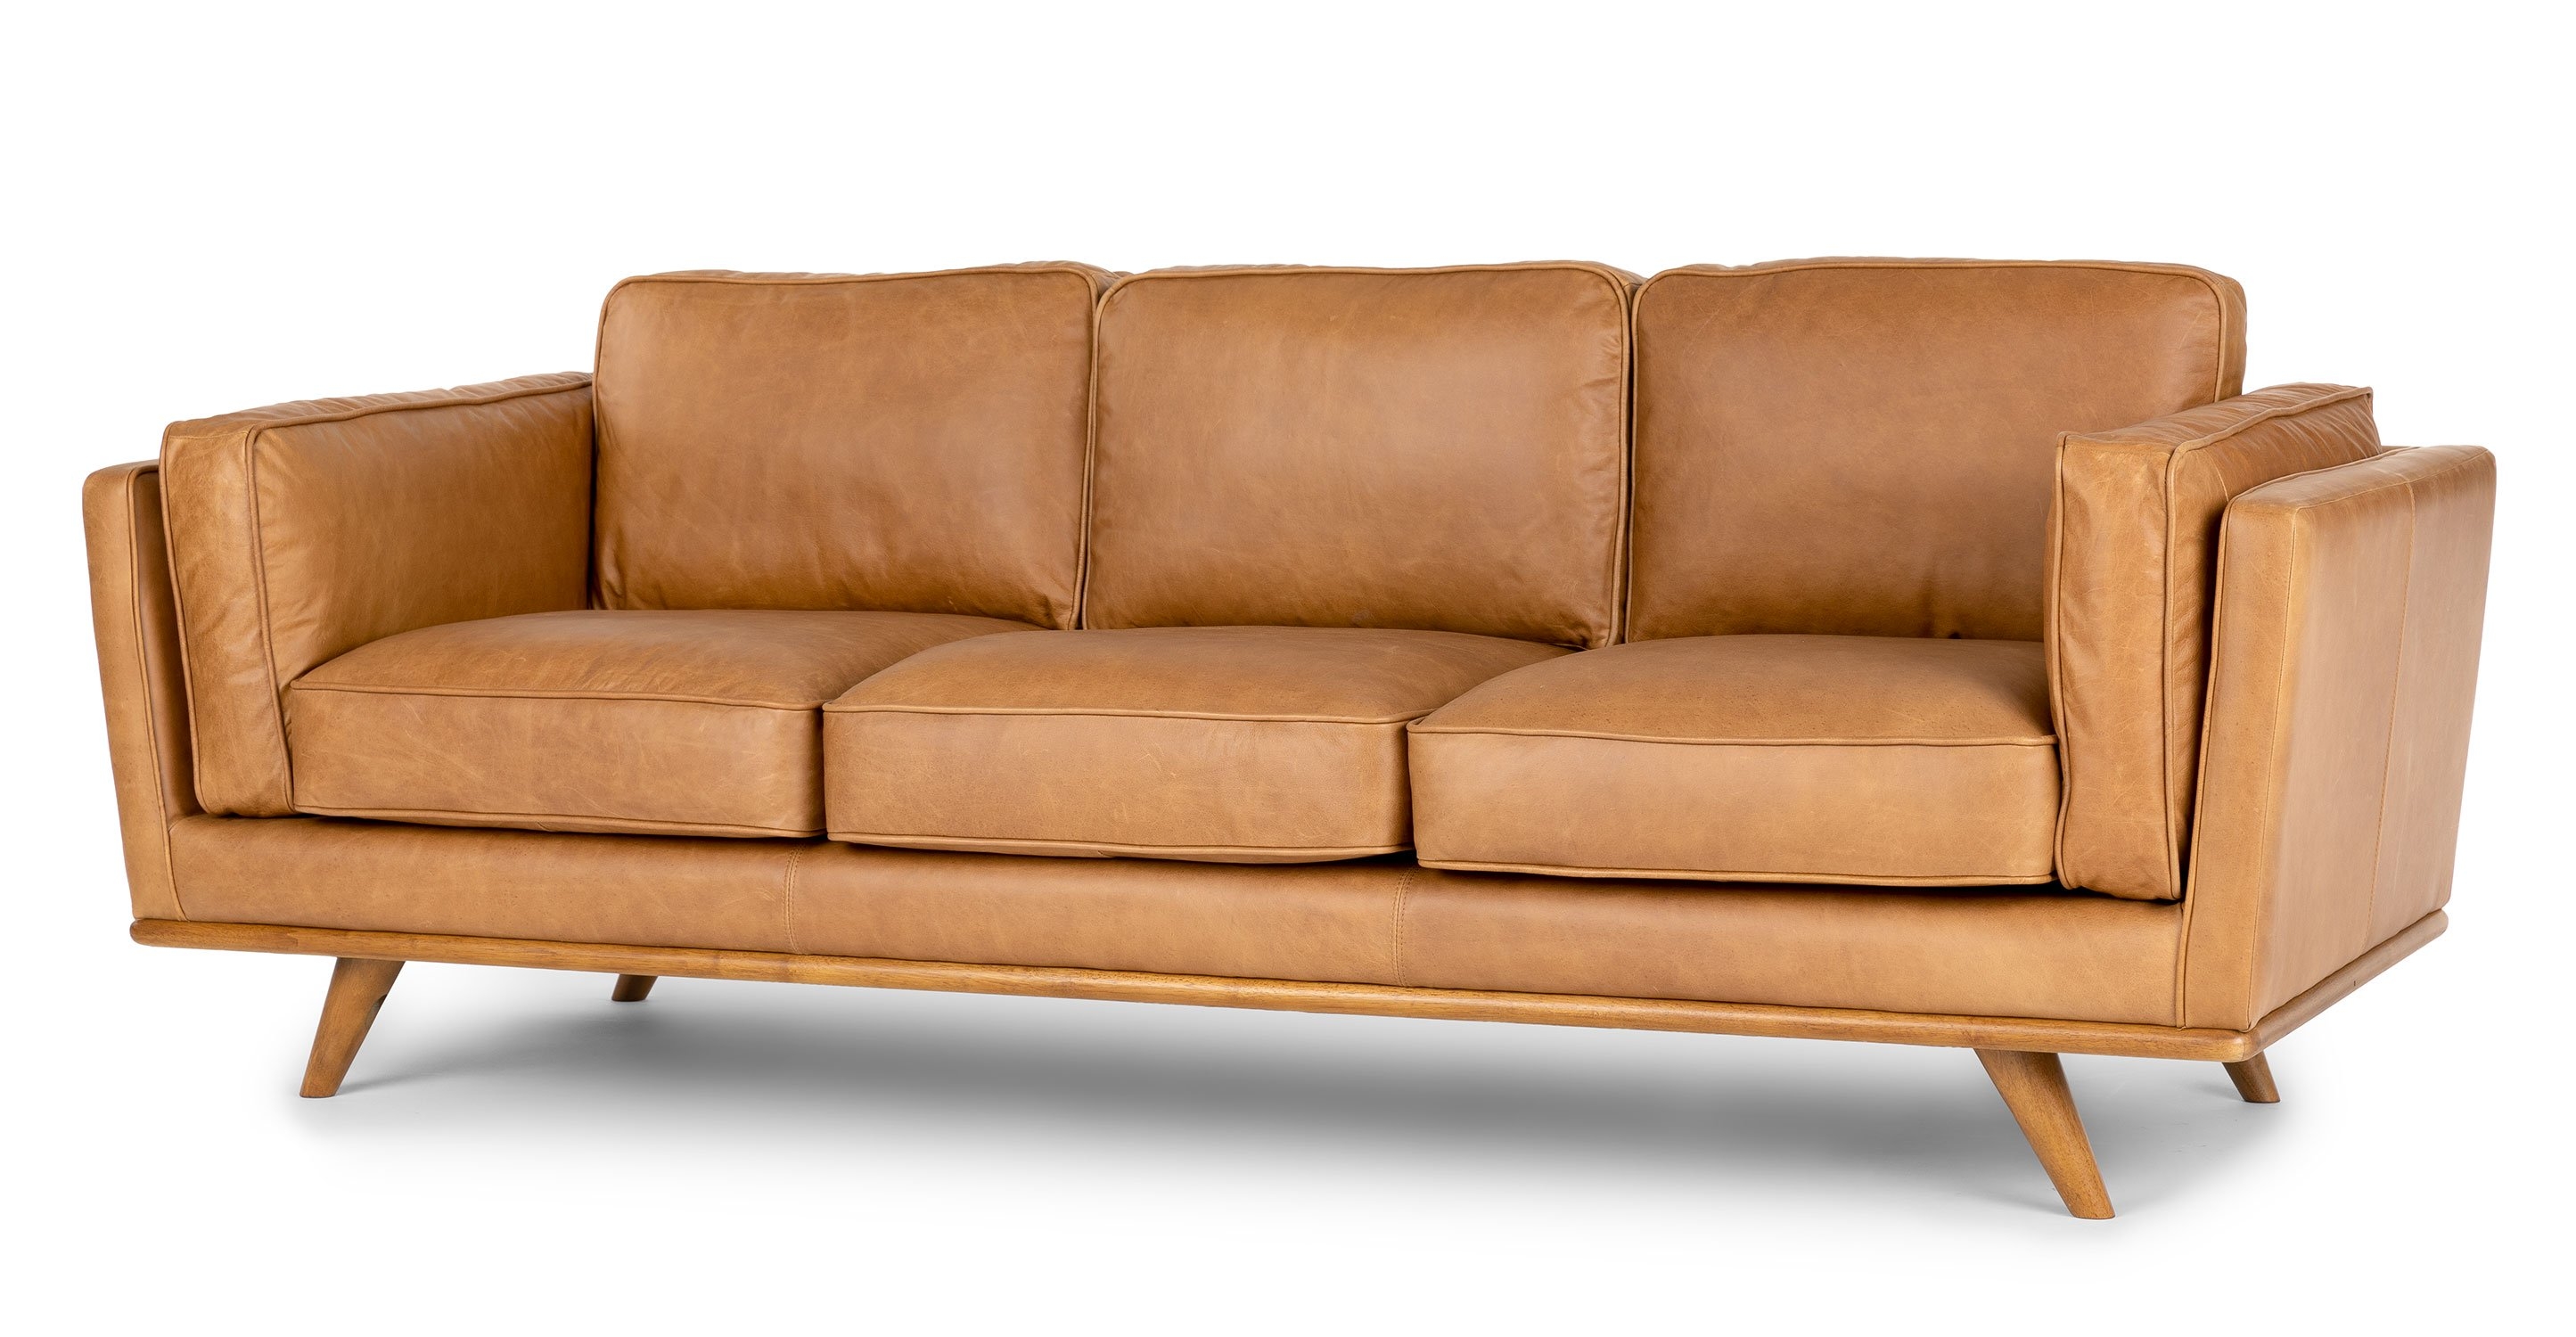 Timber Charme Tan Sofa - Image 0